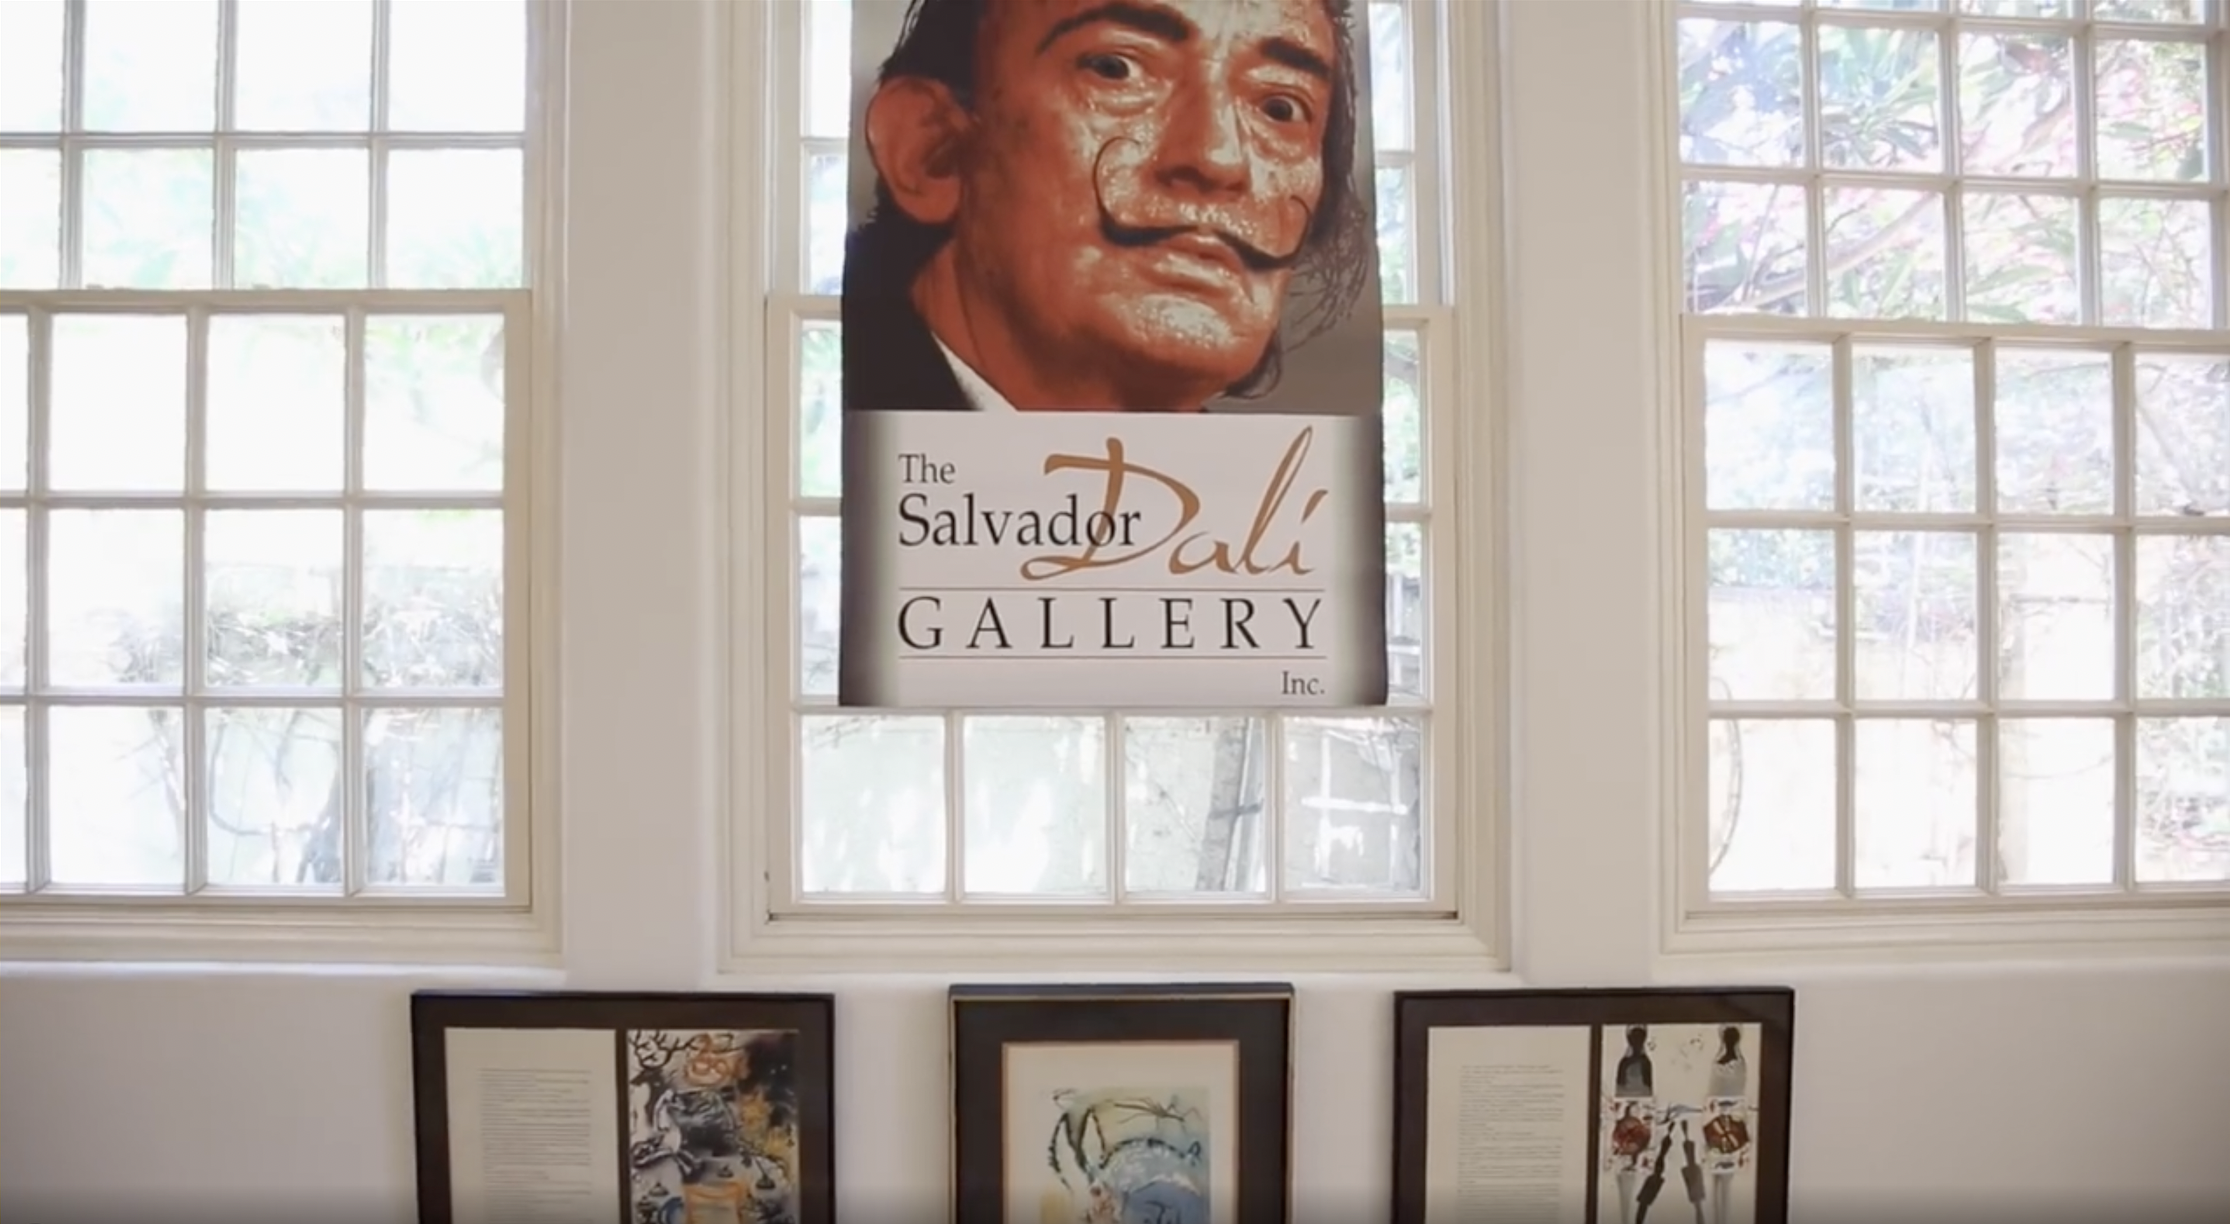 Salvador Dali Gallery - servicing 